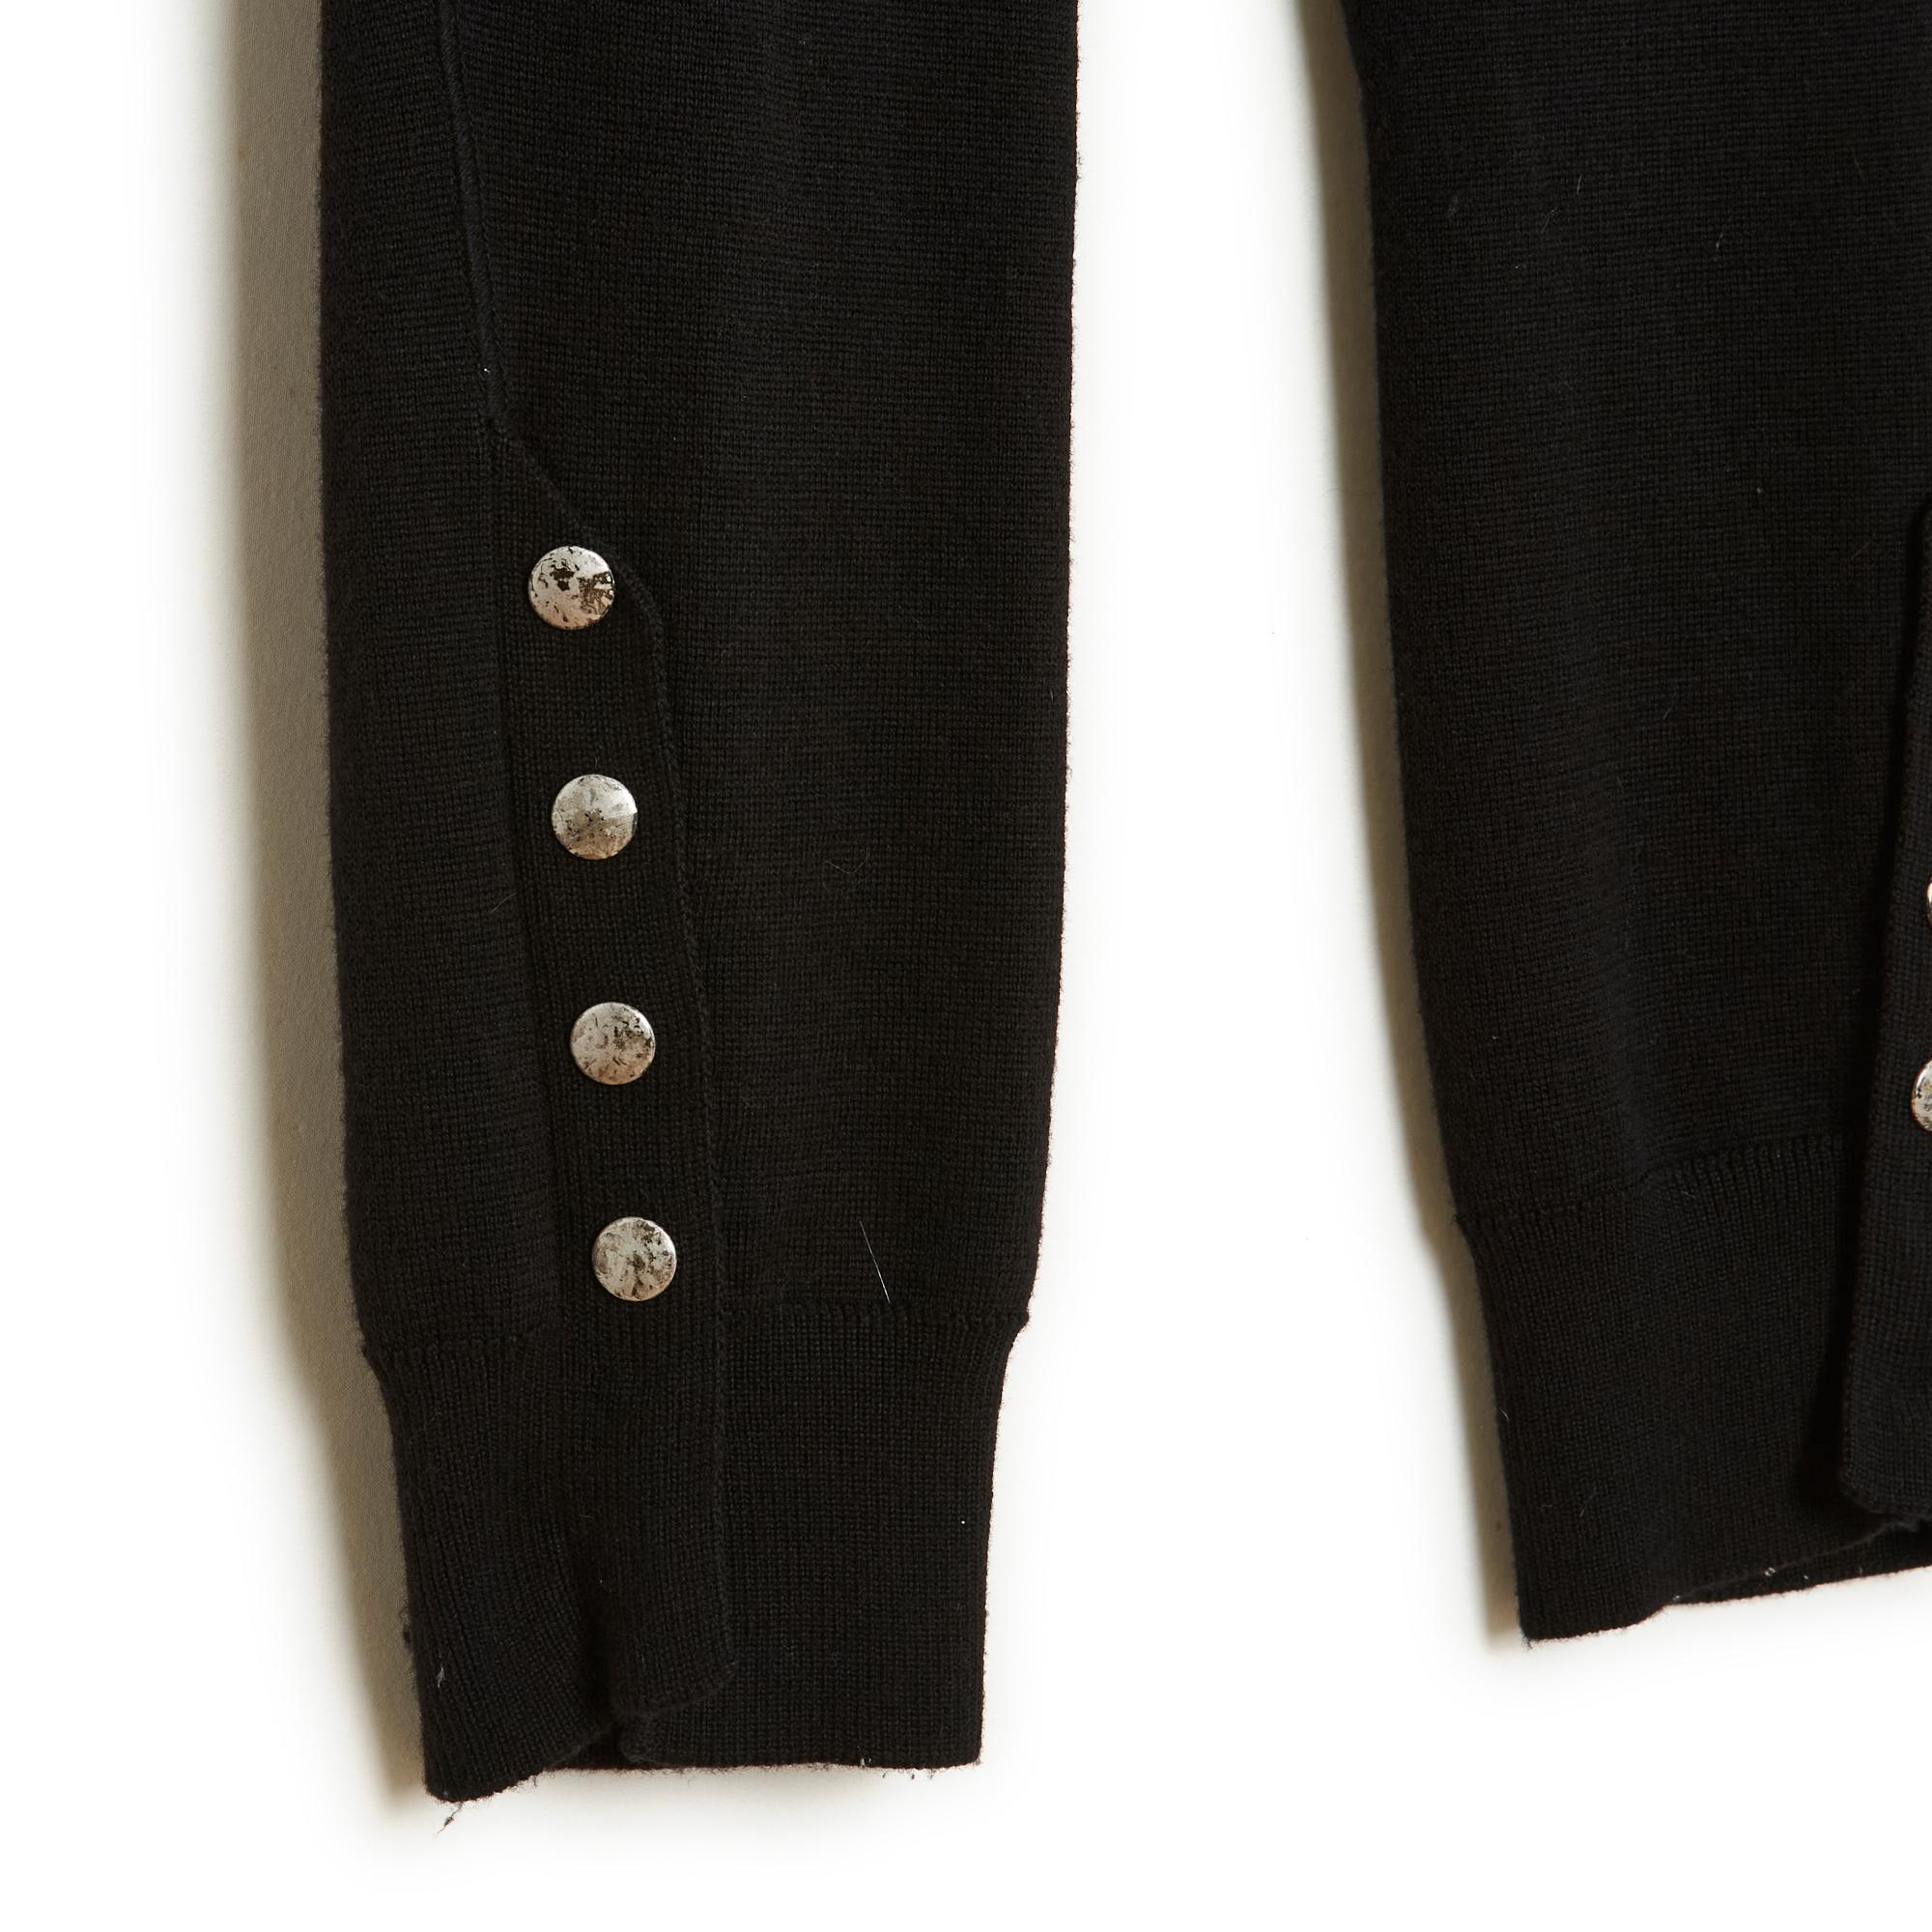 Alexander McQueen Leggings aus schwarzer Wolle, Jersey-Strick mit Netzverstärkung im Schritt bis zu den Knöcheln, Reitstil, elastische Taille, Beinabschluss mit 6 Druckknöpfen, von denen 4 mit silbernen Schmuckknöpfen aus Metall verziert sind. Größe